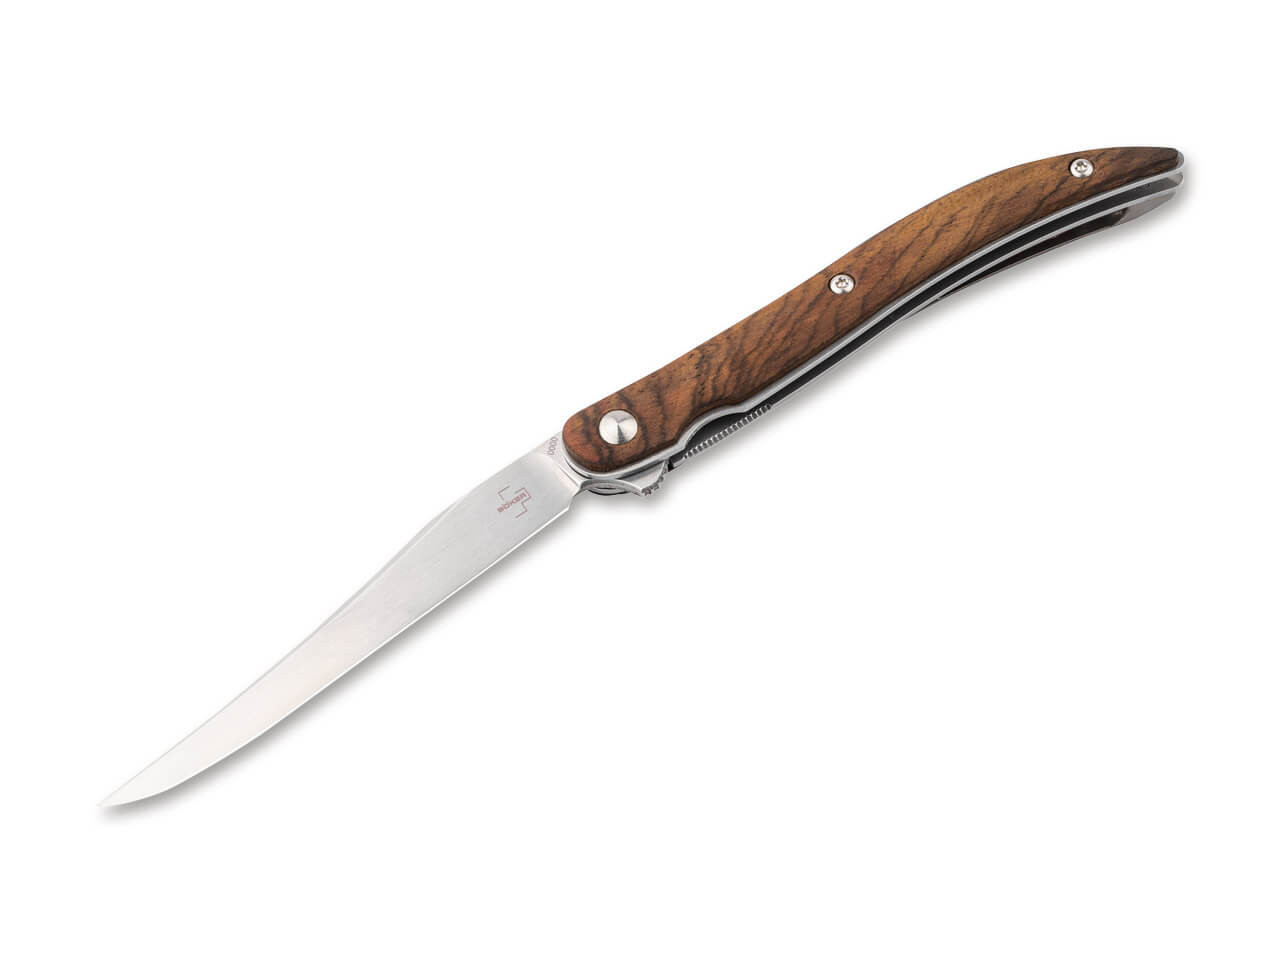 Folding Steak Knife, Household Knife, Camping Tool, Utensils